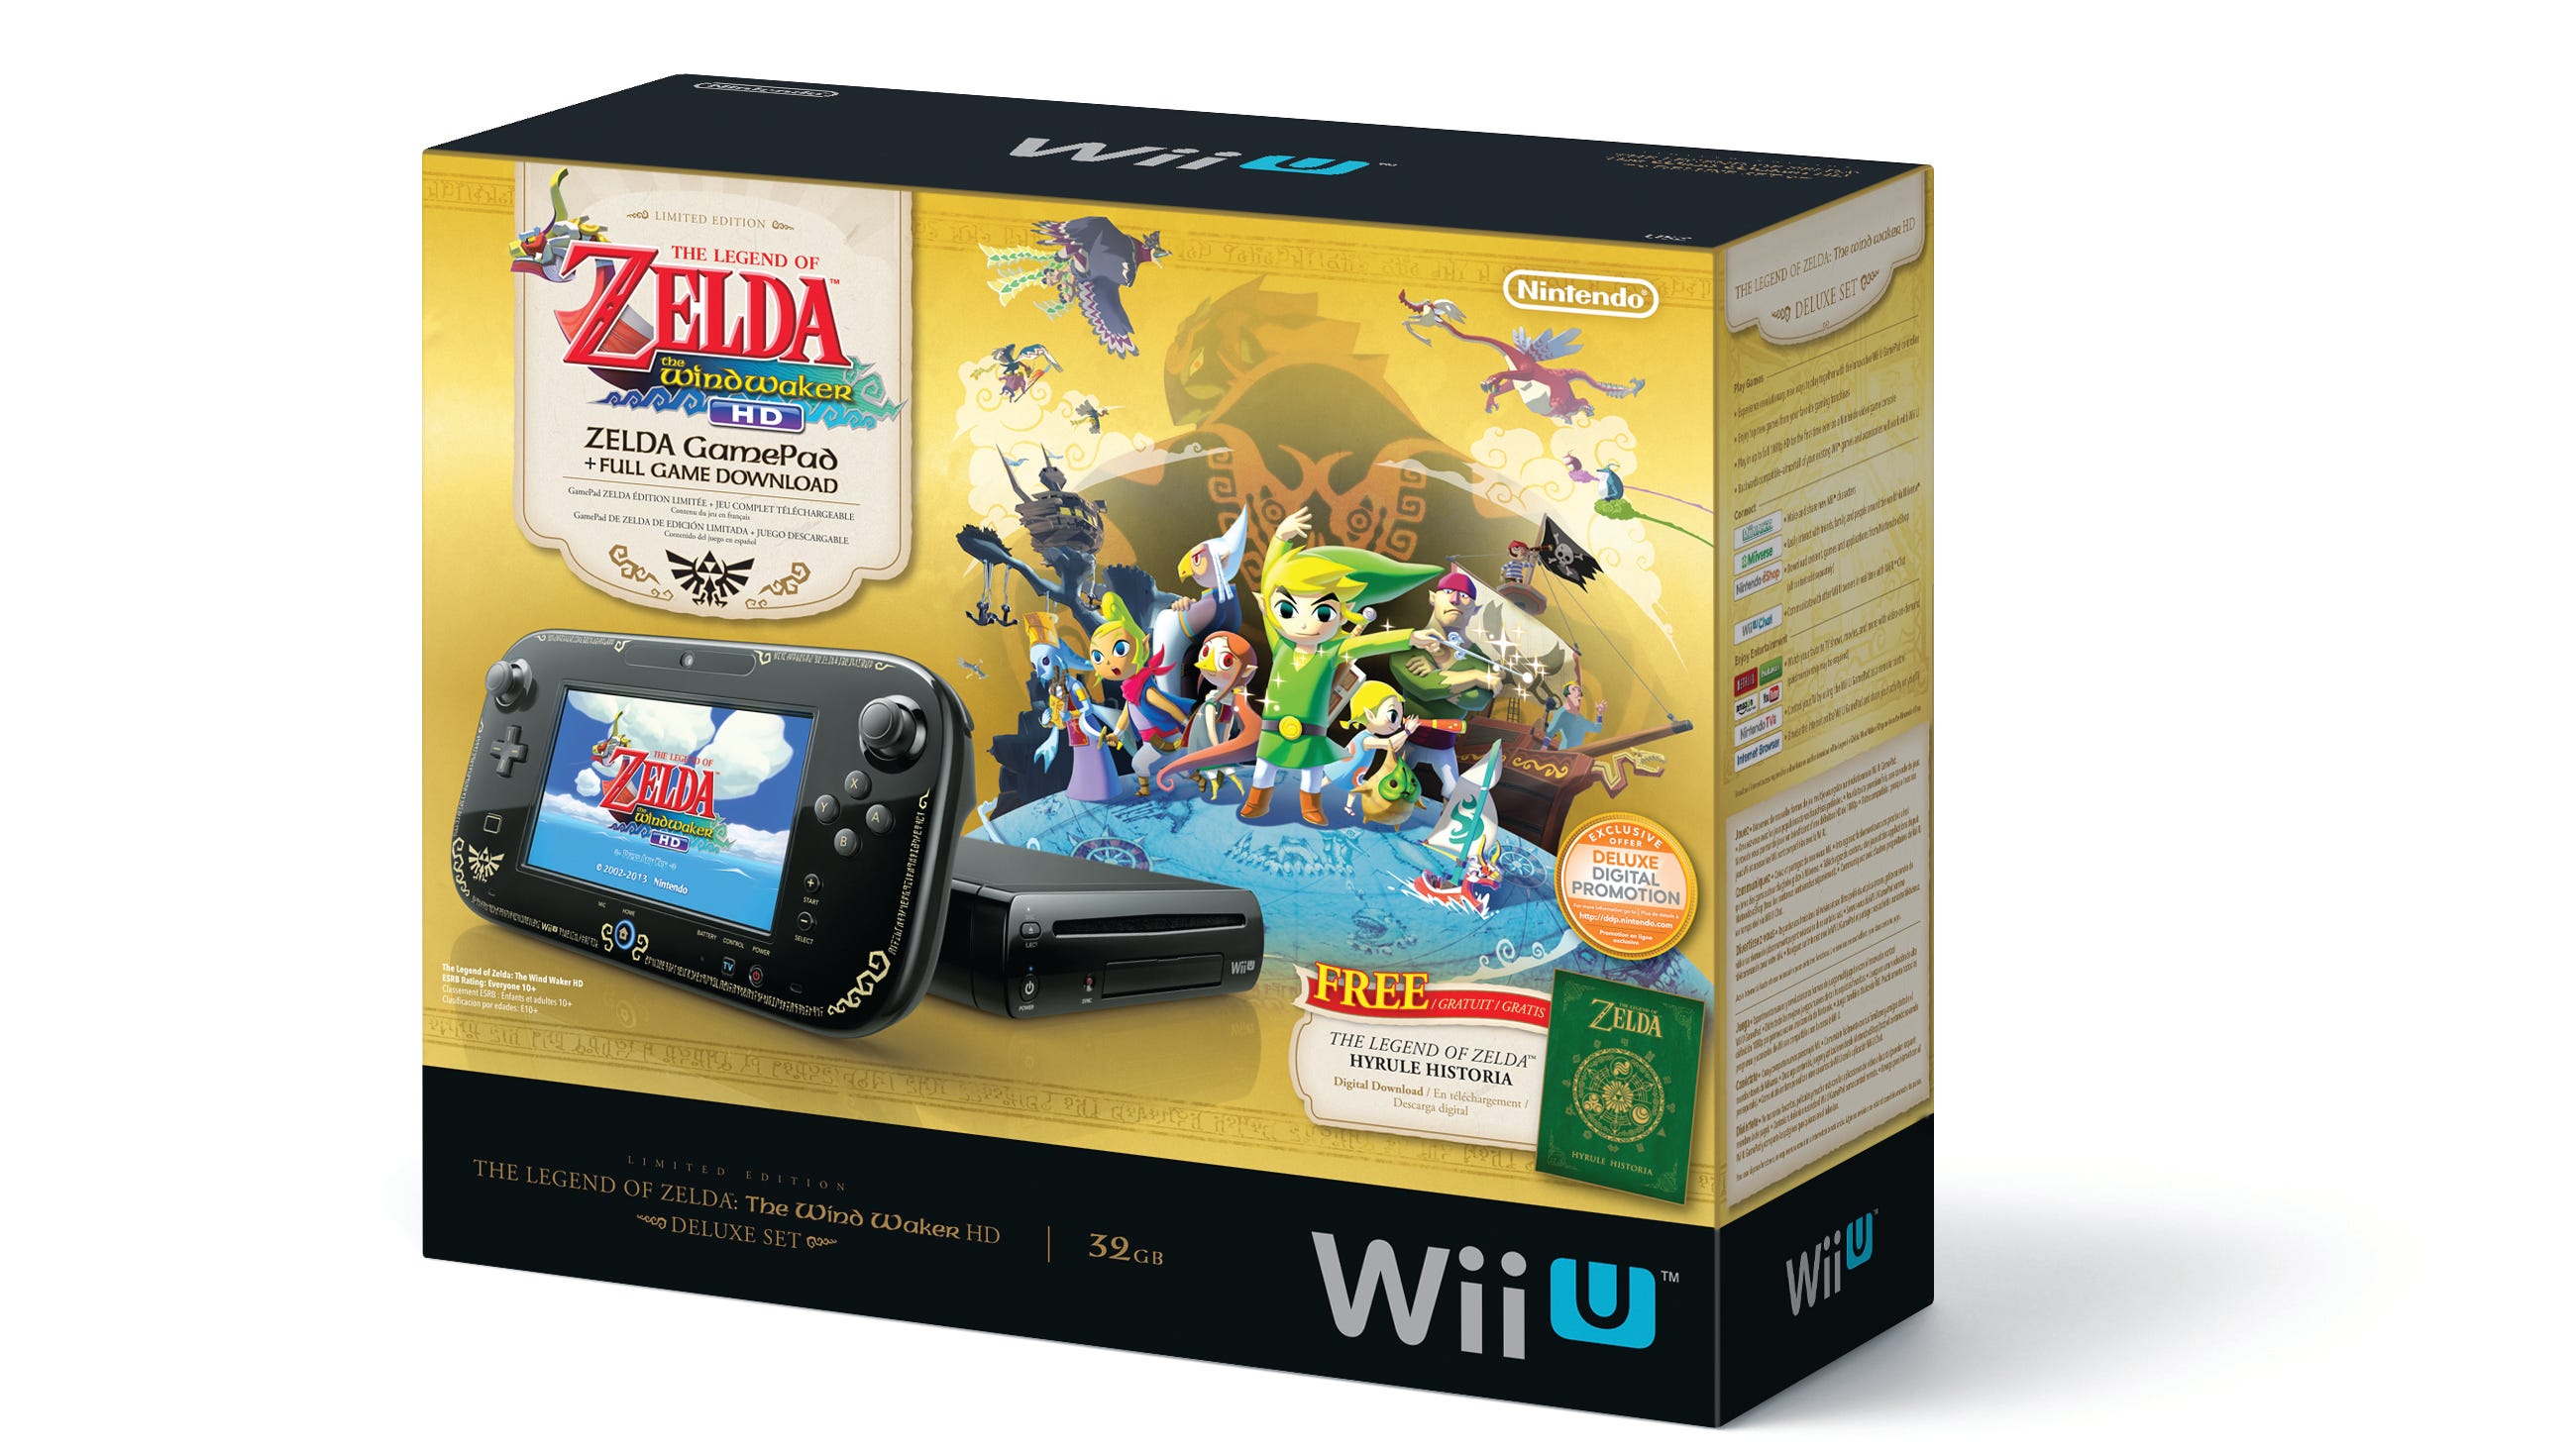 Nintendo Cuts Price Of Wii U Video Game Console